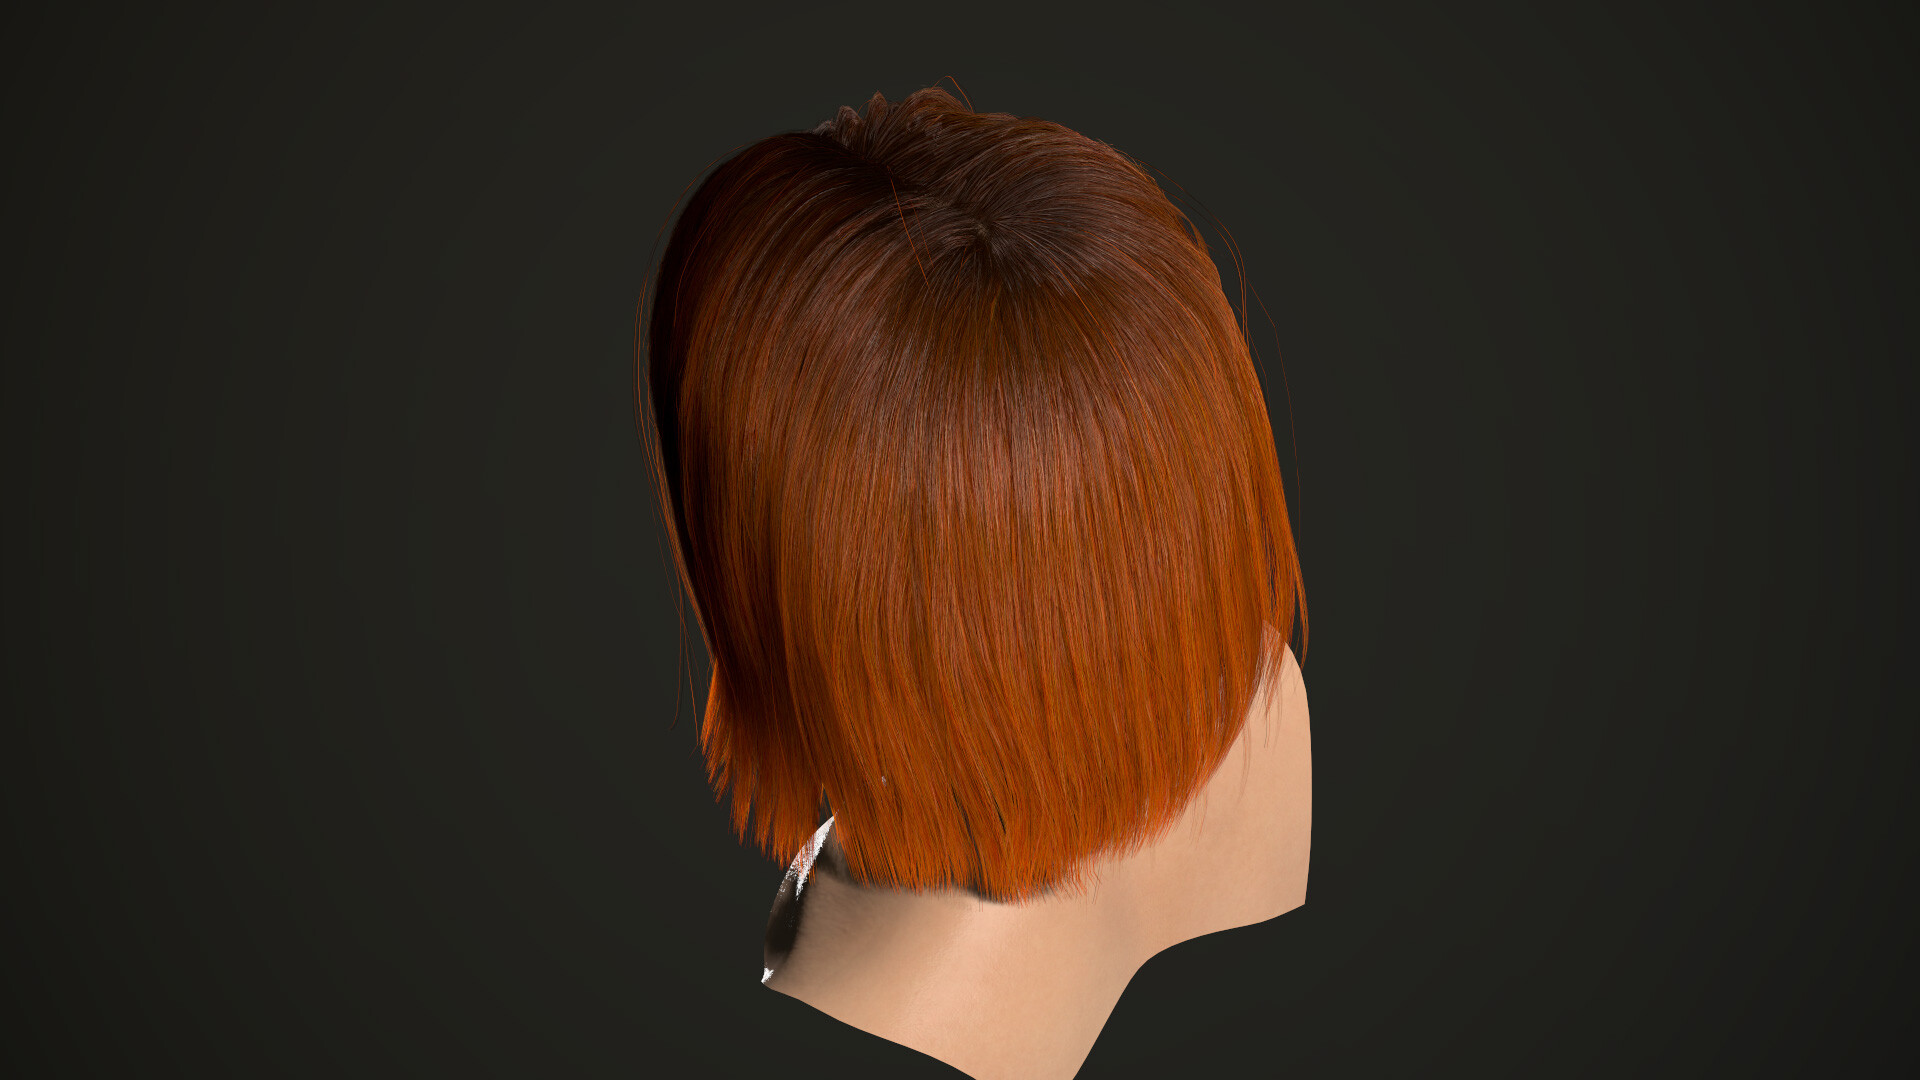 ArtStation - Hair Chop 3d: Barber Shop Game